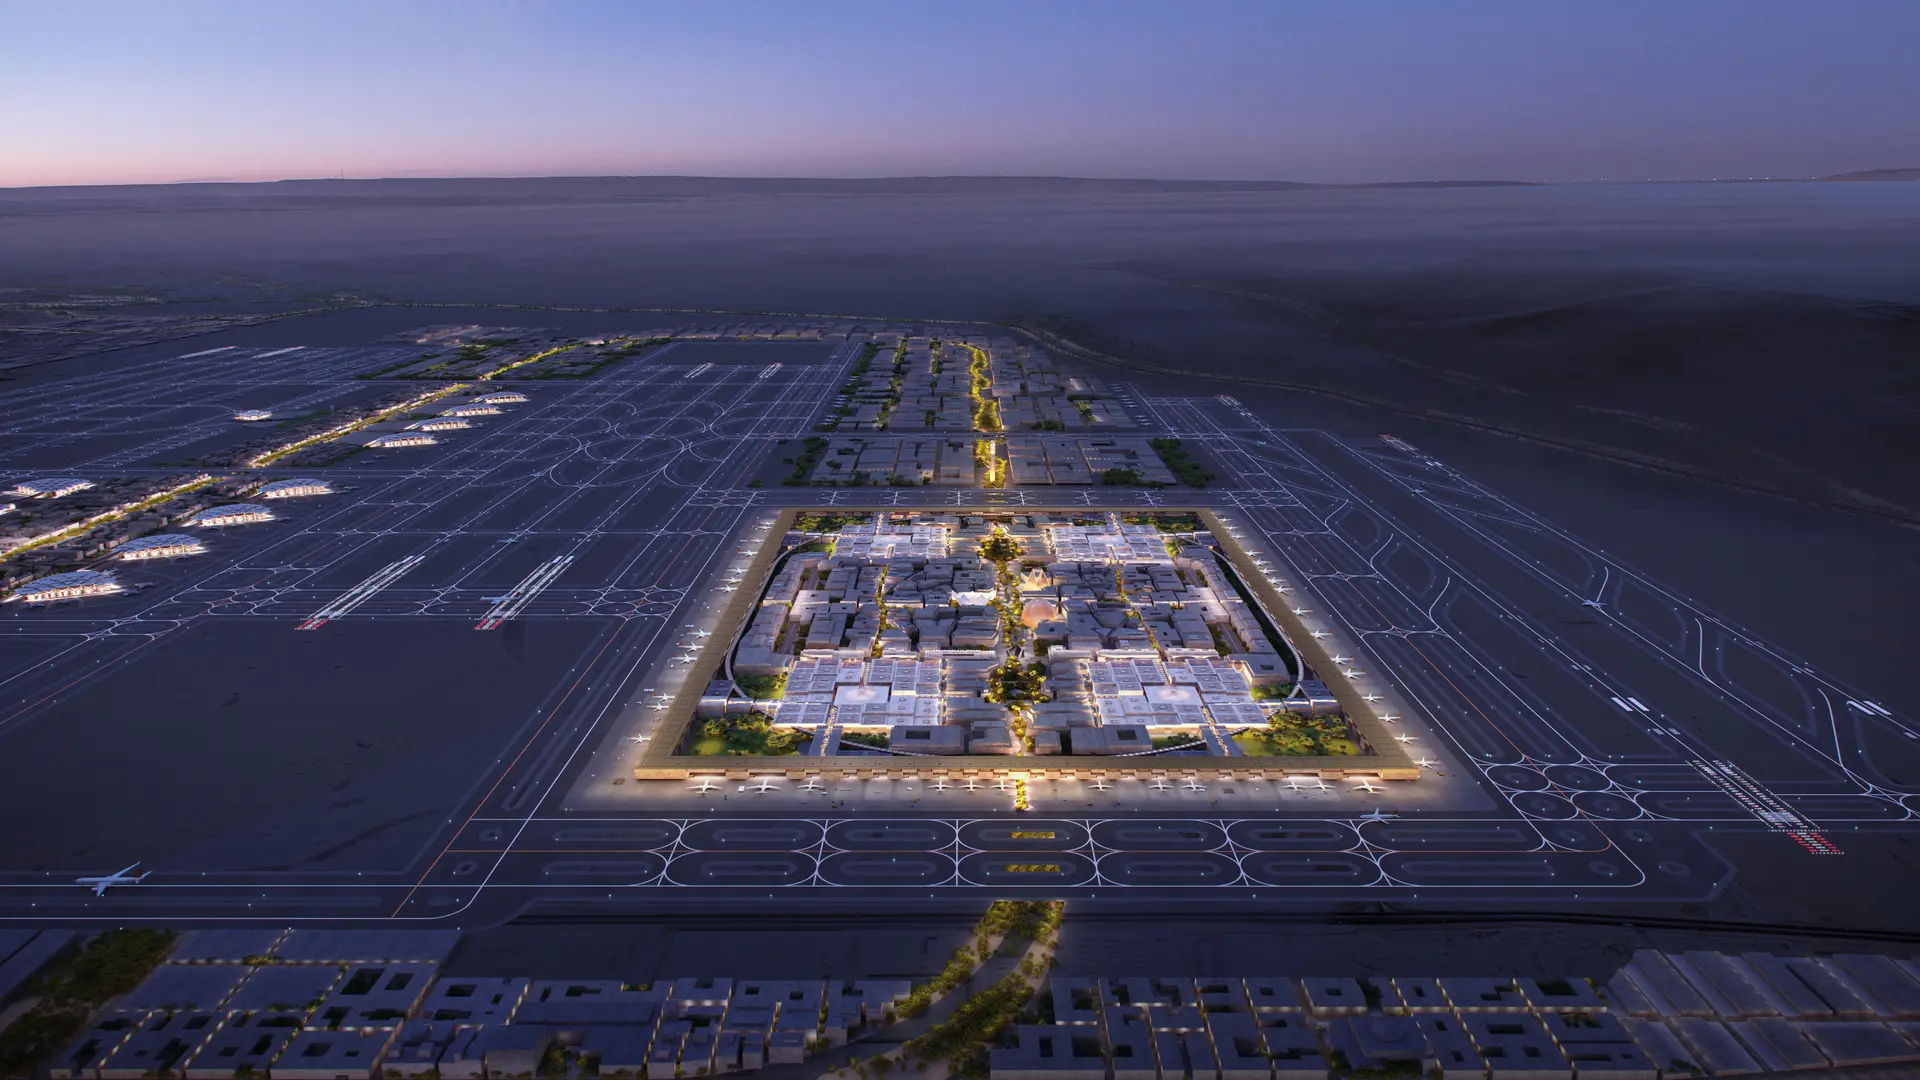 Les nouveaux modèles de l'aéroport international Roi Salman dévoilés par Foster+Partners - Arch2O.com